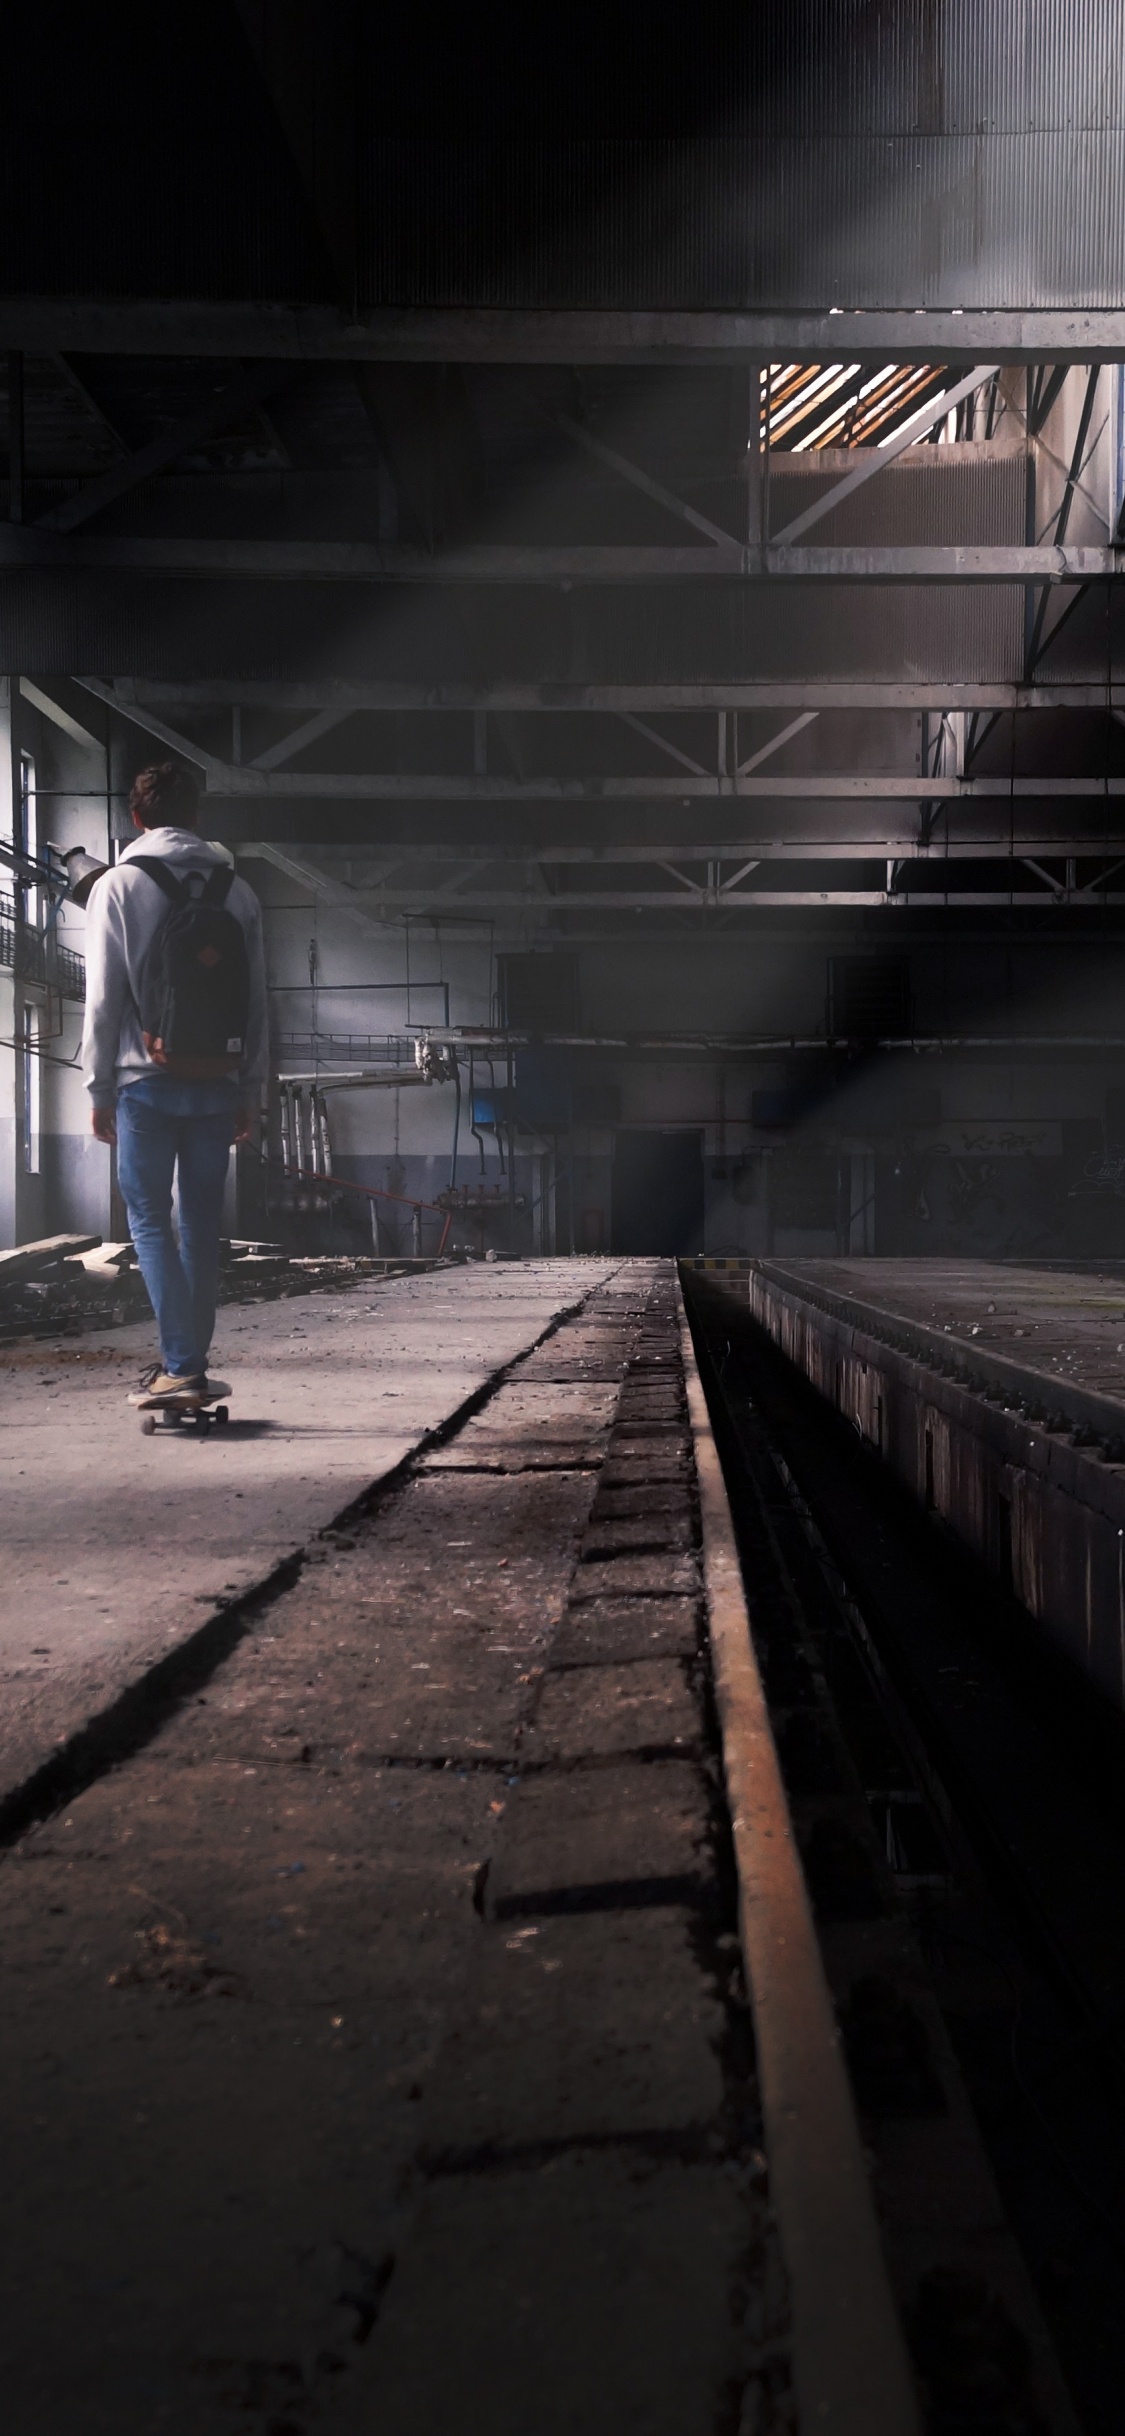 Hombre en Blue Jeans Caminando en la Estación de Tren. Wallpaper in 1125x2436 Resolution